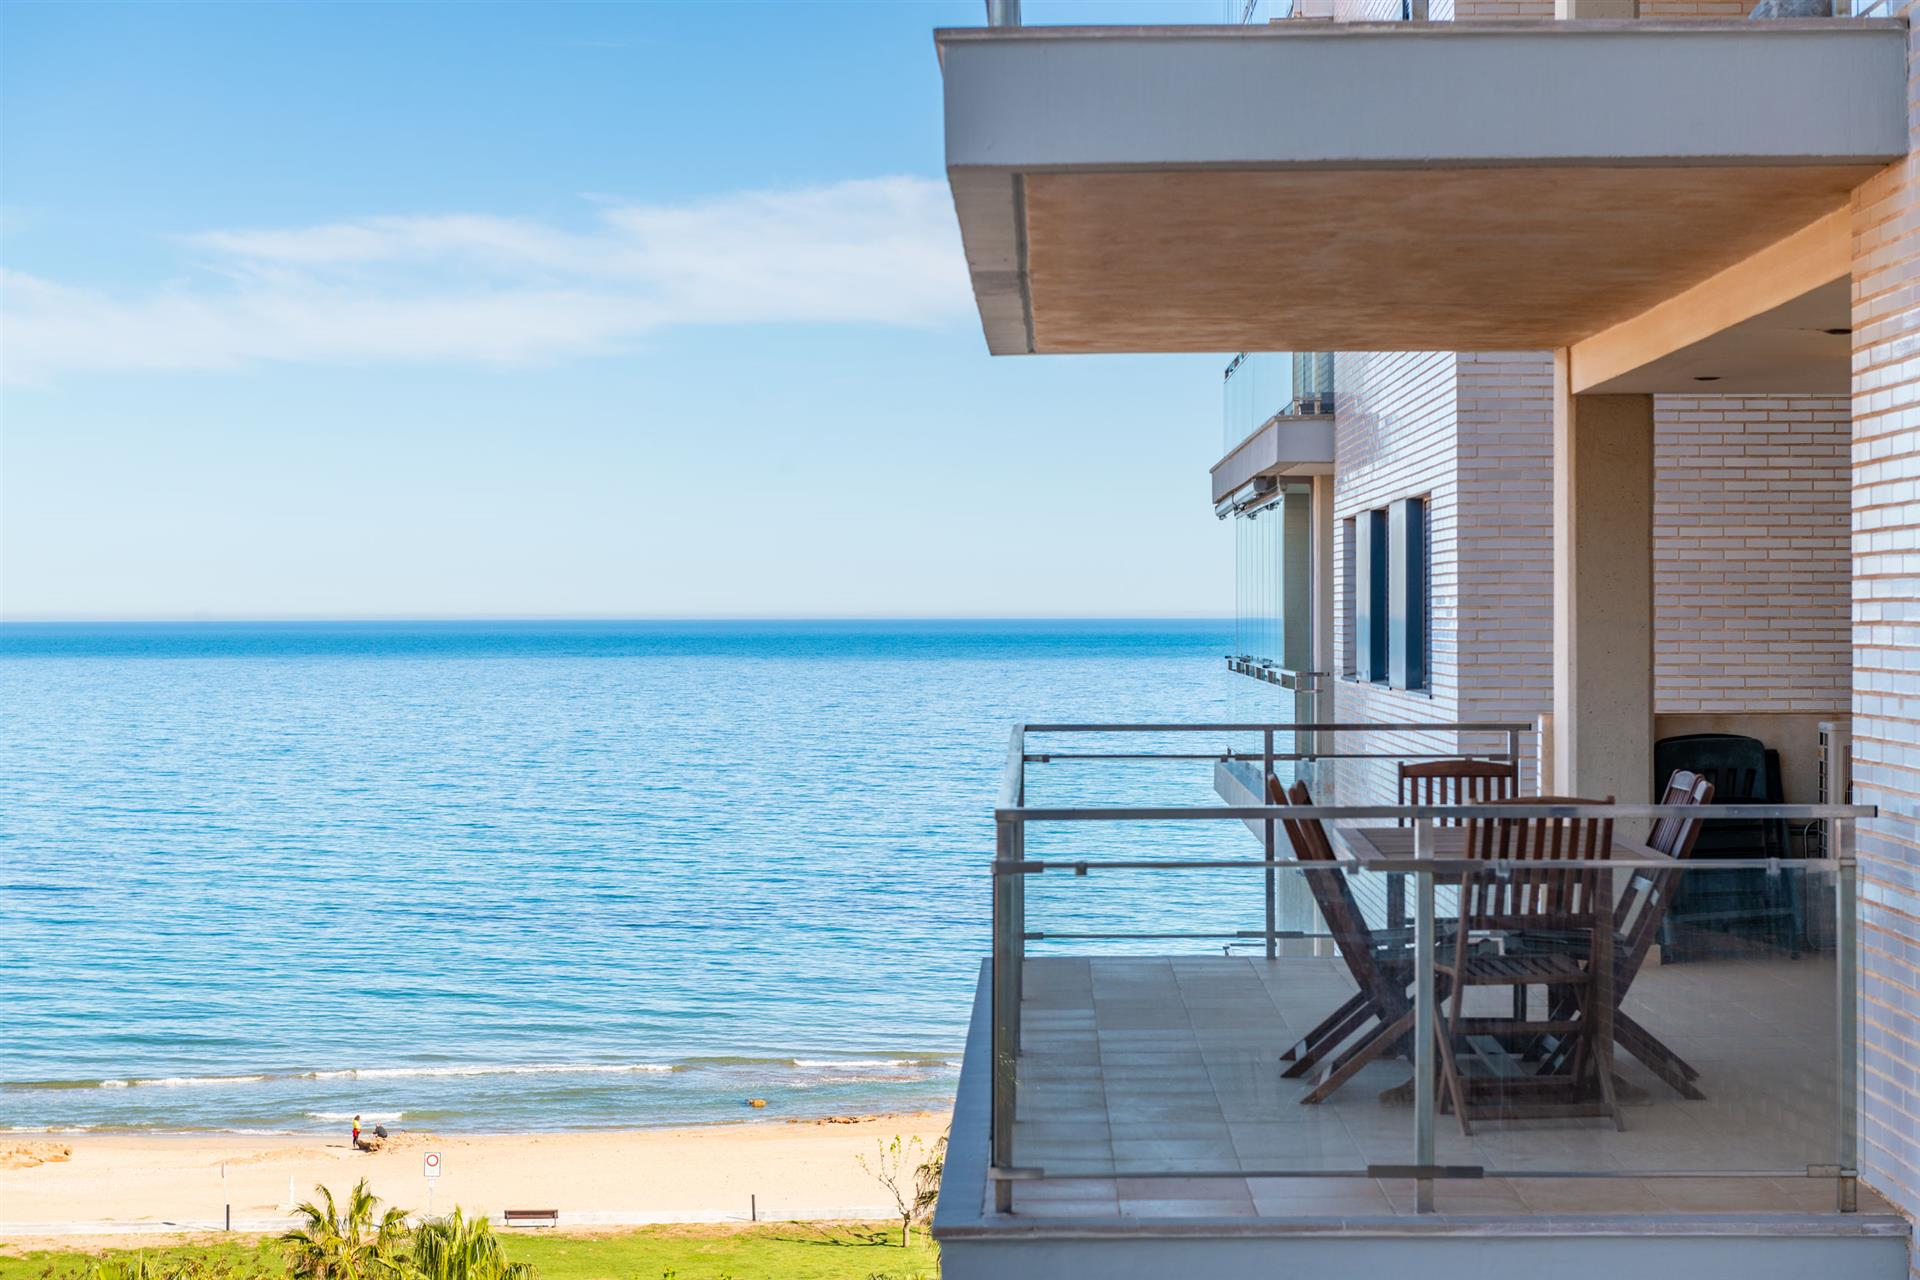 Magnifico  apartamento en primera linea de playa, con vistas al mar en la mejor zona de Marina D'or